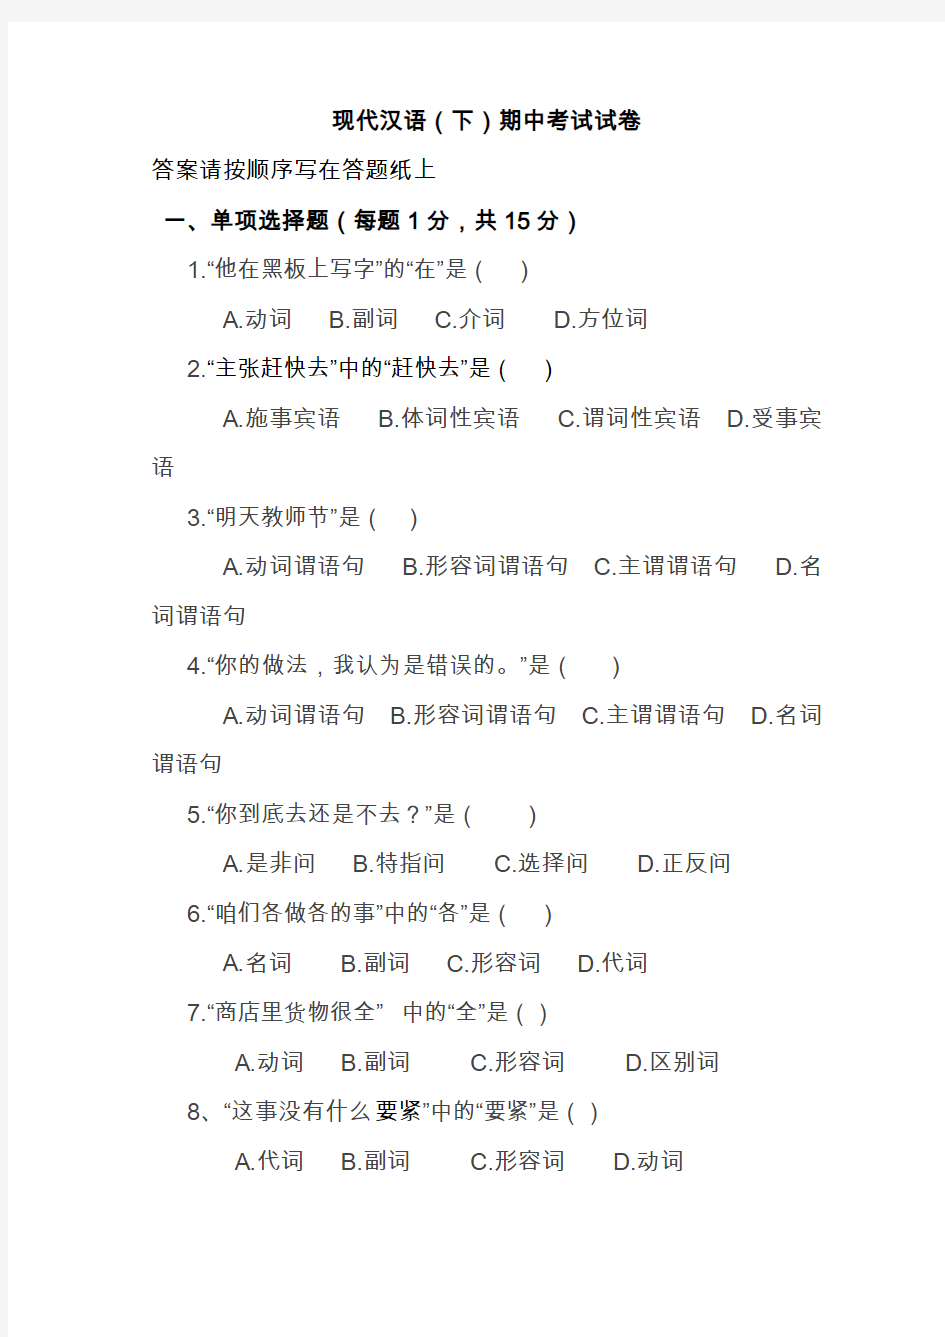 现代汉语下册期中考试试卷